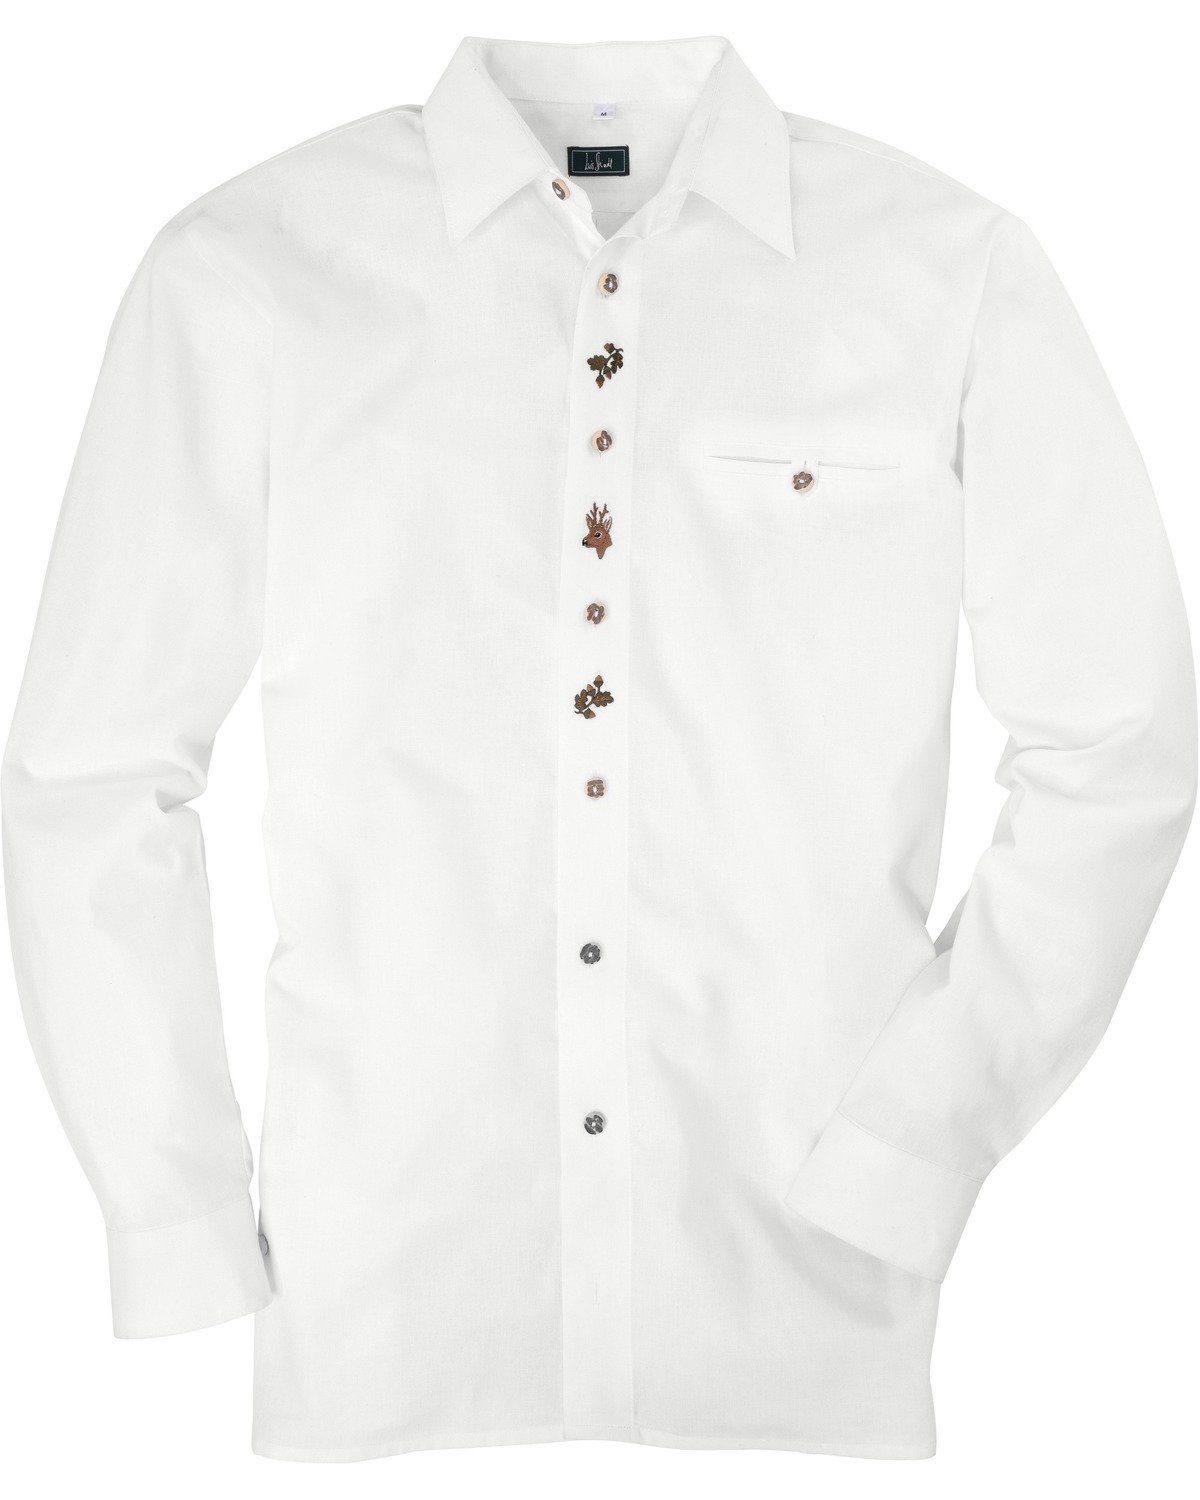 Luis Steindl Trachtenhemd Trachtenhemd | Trachtenhemden